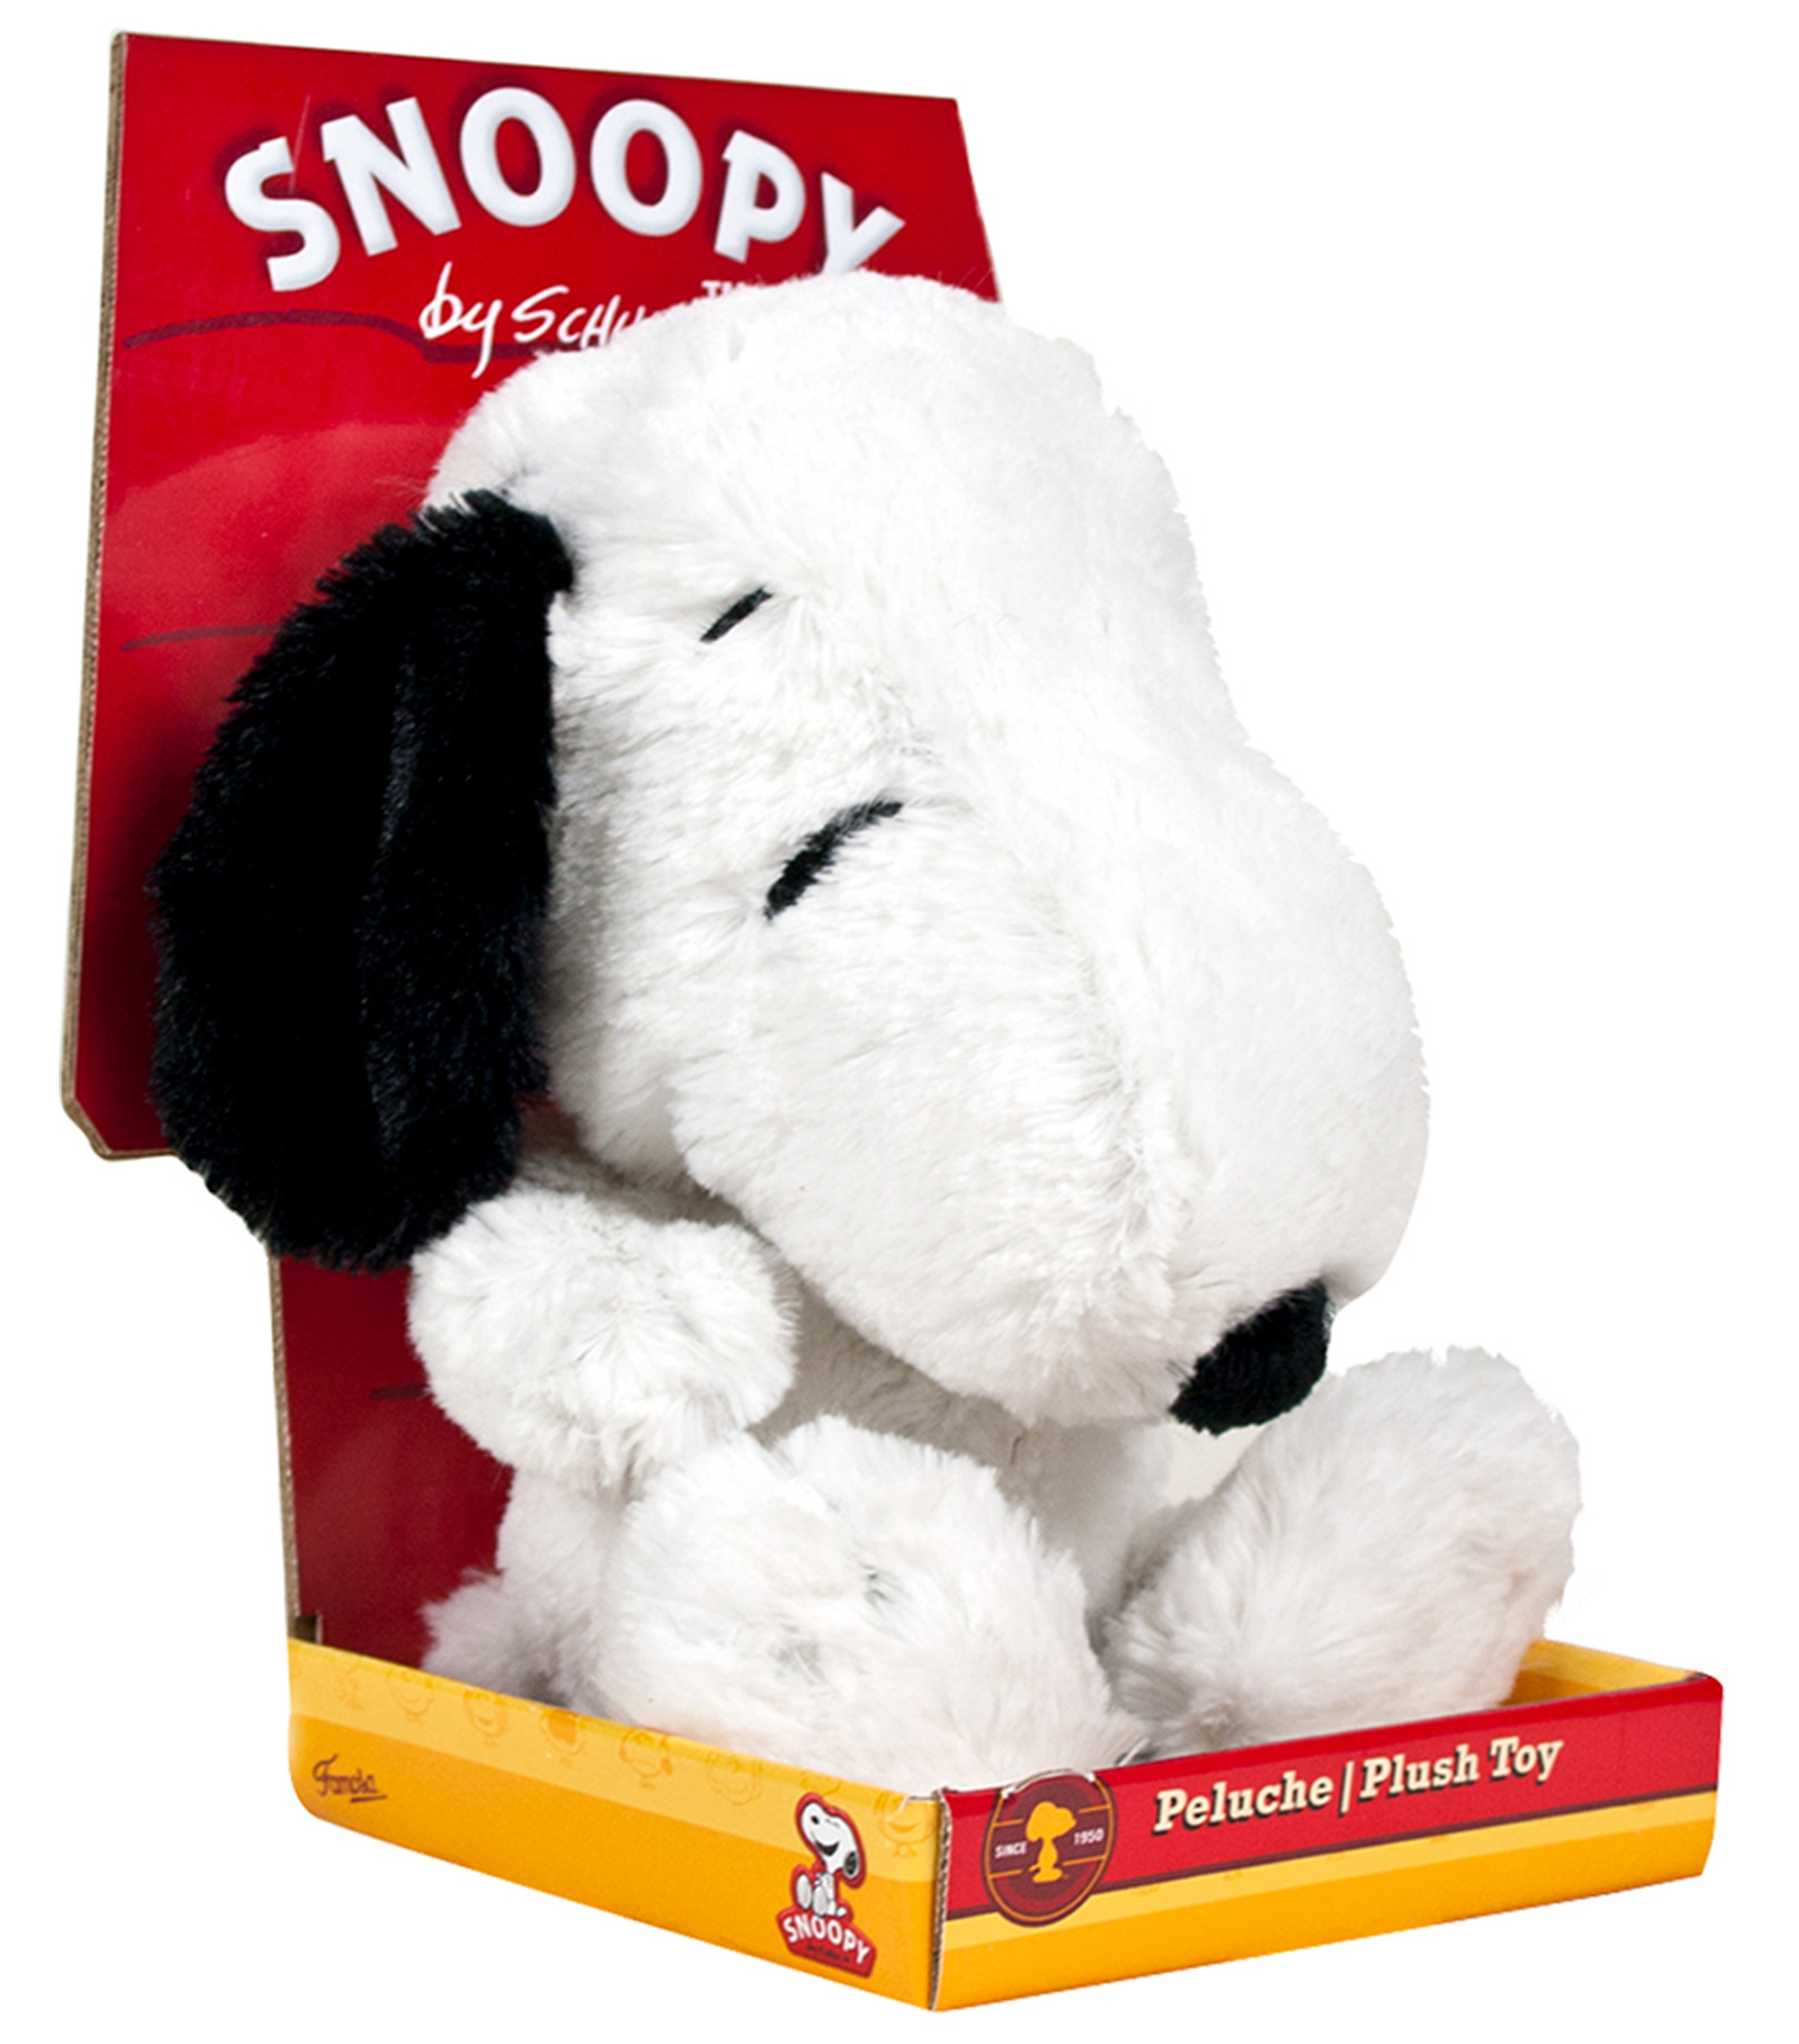 El Puntero - Peluche de Snoopy Original 😱😍 Regala este